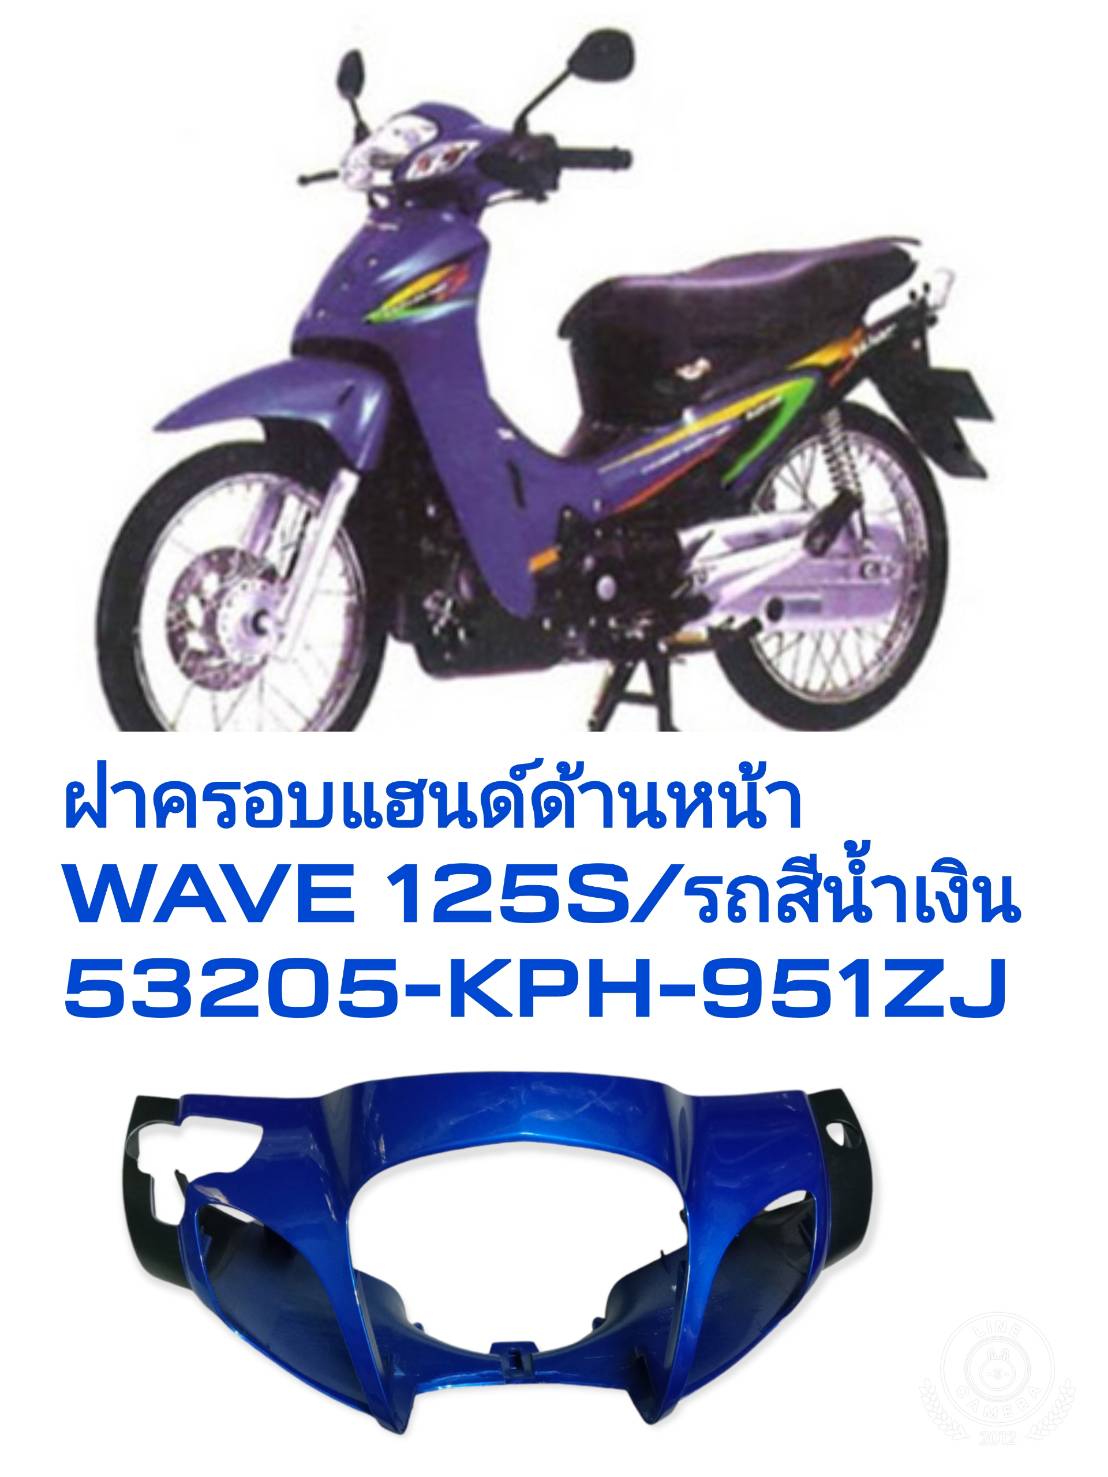 Catalogue Catalogue Honda Wave 125i K73  Phụ Tùng Nhập Khẩu Chính Hãng